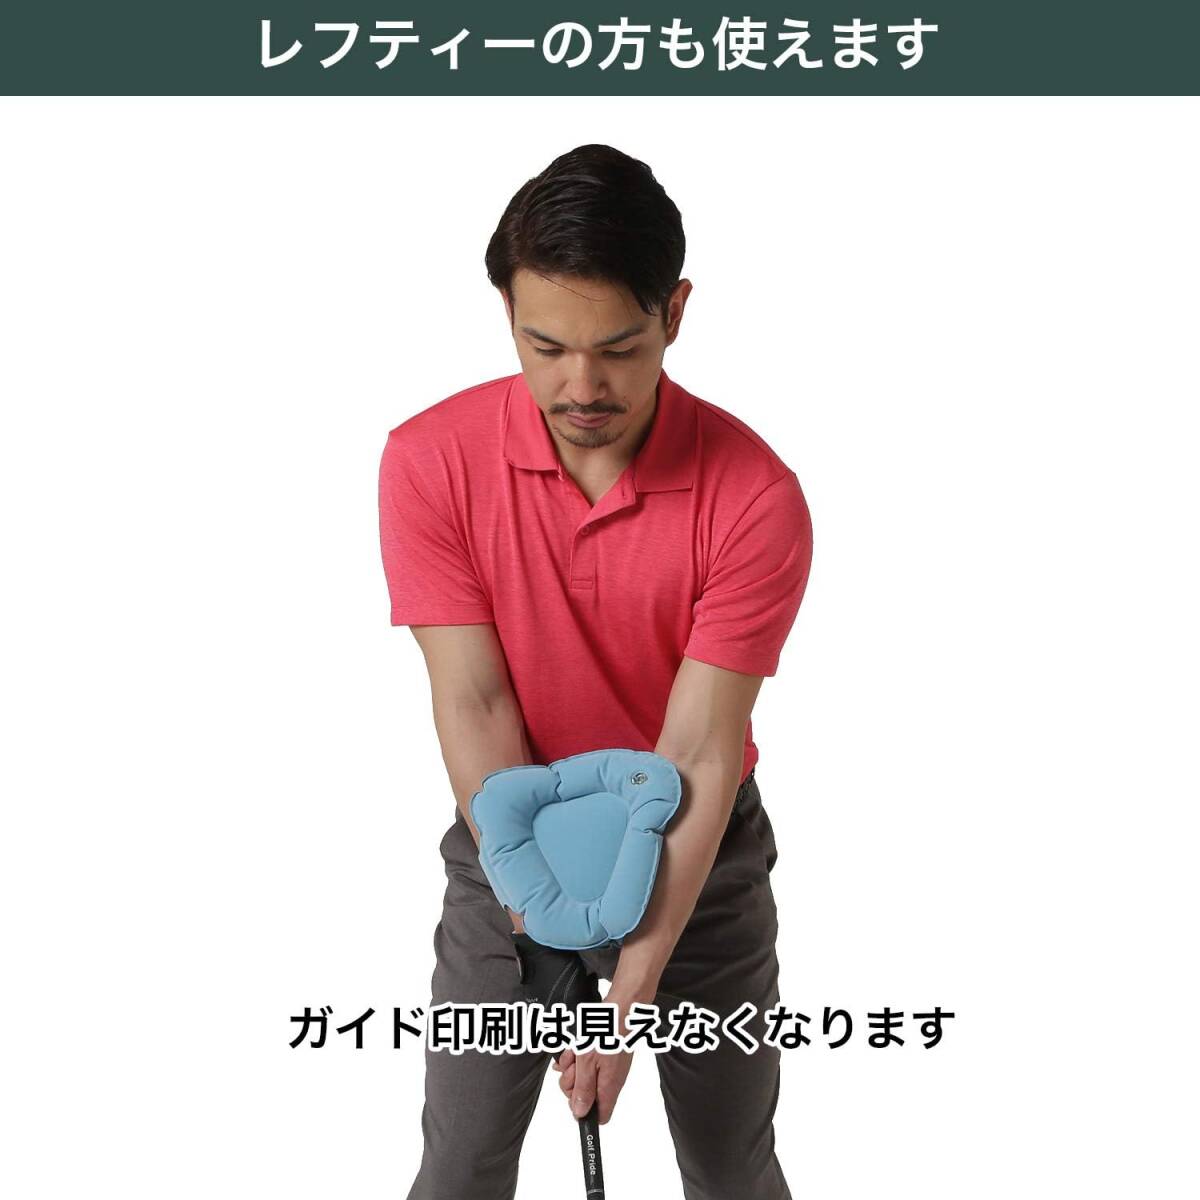 Tabata(タバタ) ゴルフ 素振り トレーニング 練習器具 スイング練習機 ゴルフ練習用品 三角先生 Fit GV0366の画像4